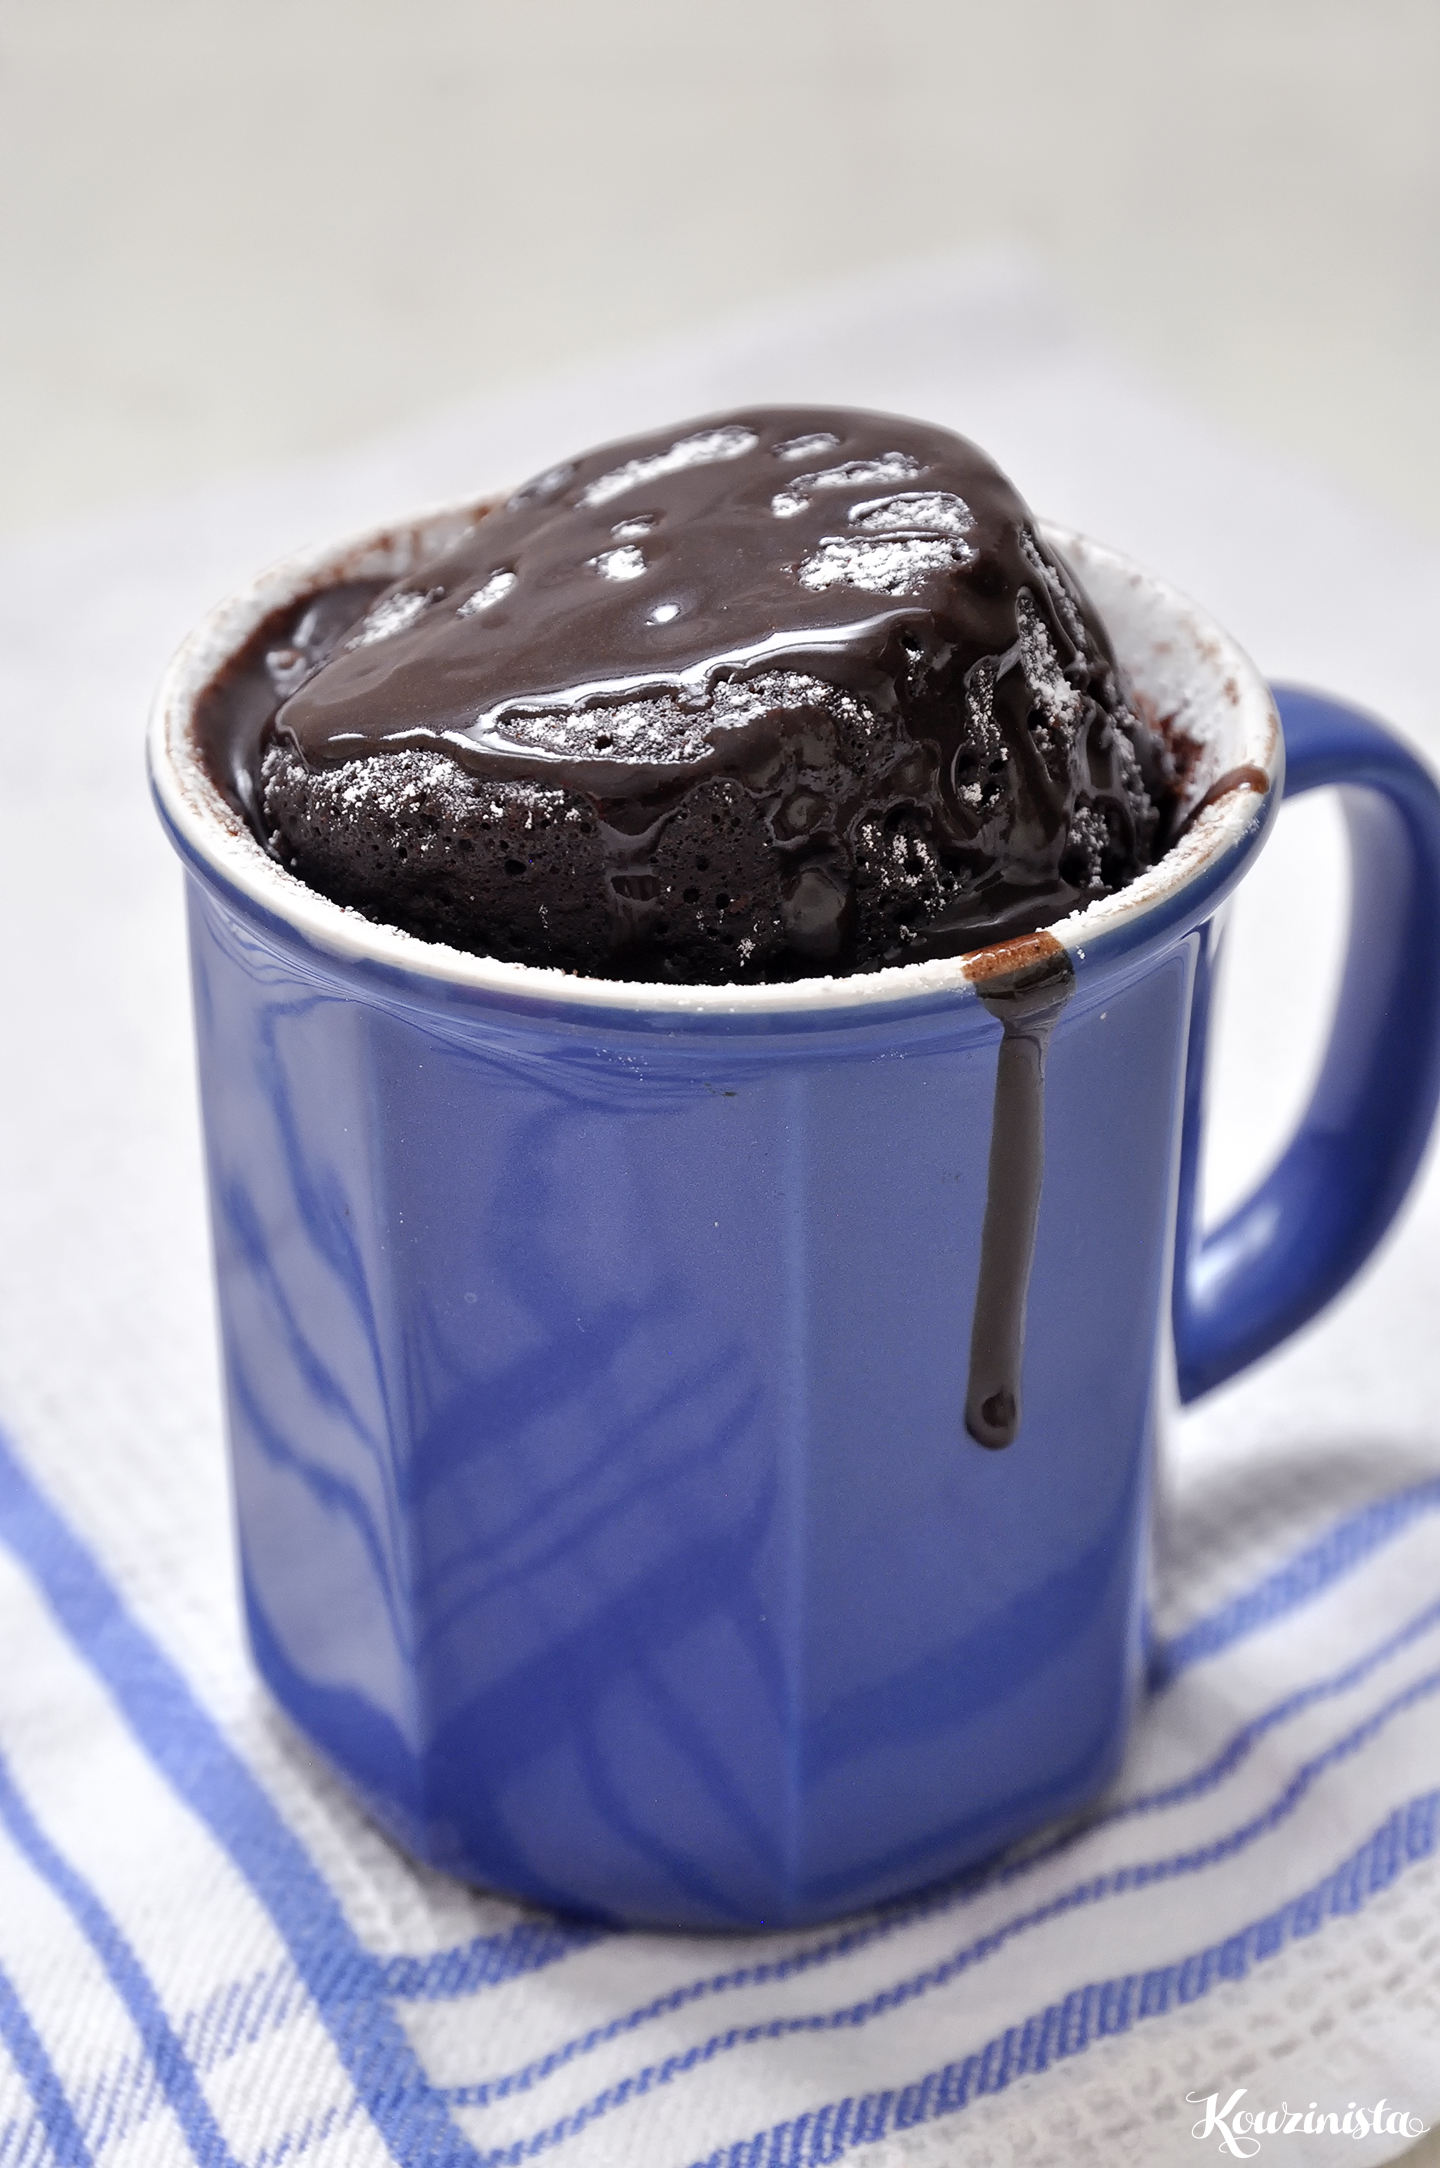 Σοκολατένιο κέικ στιγμής σε κούπα / Instant chocolate mug cake